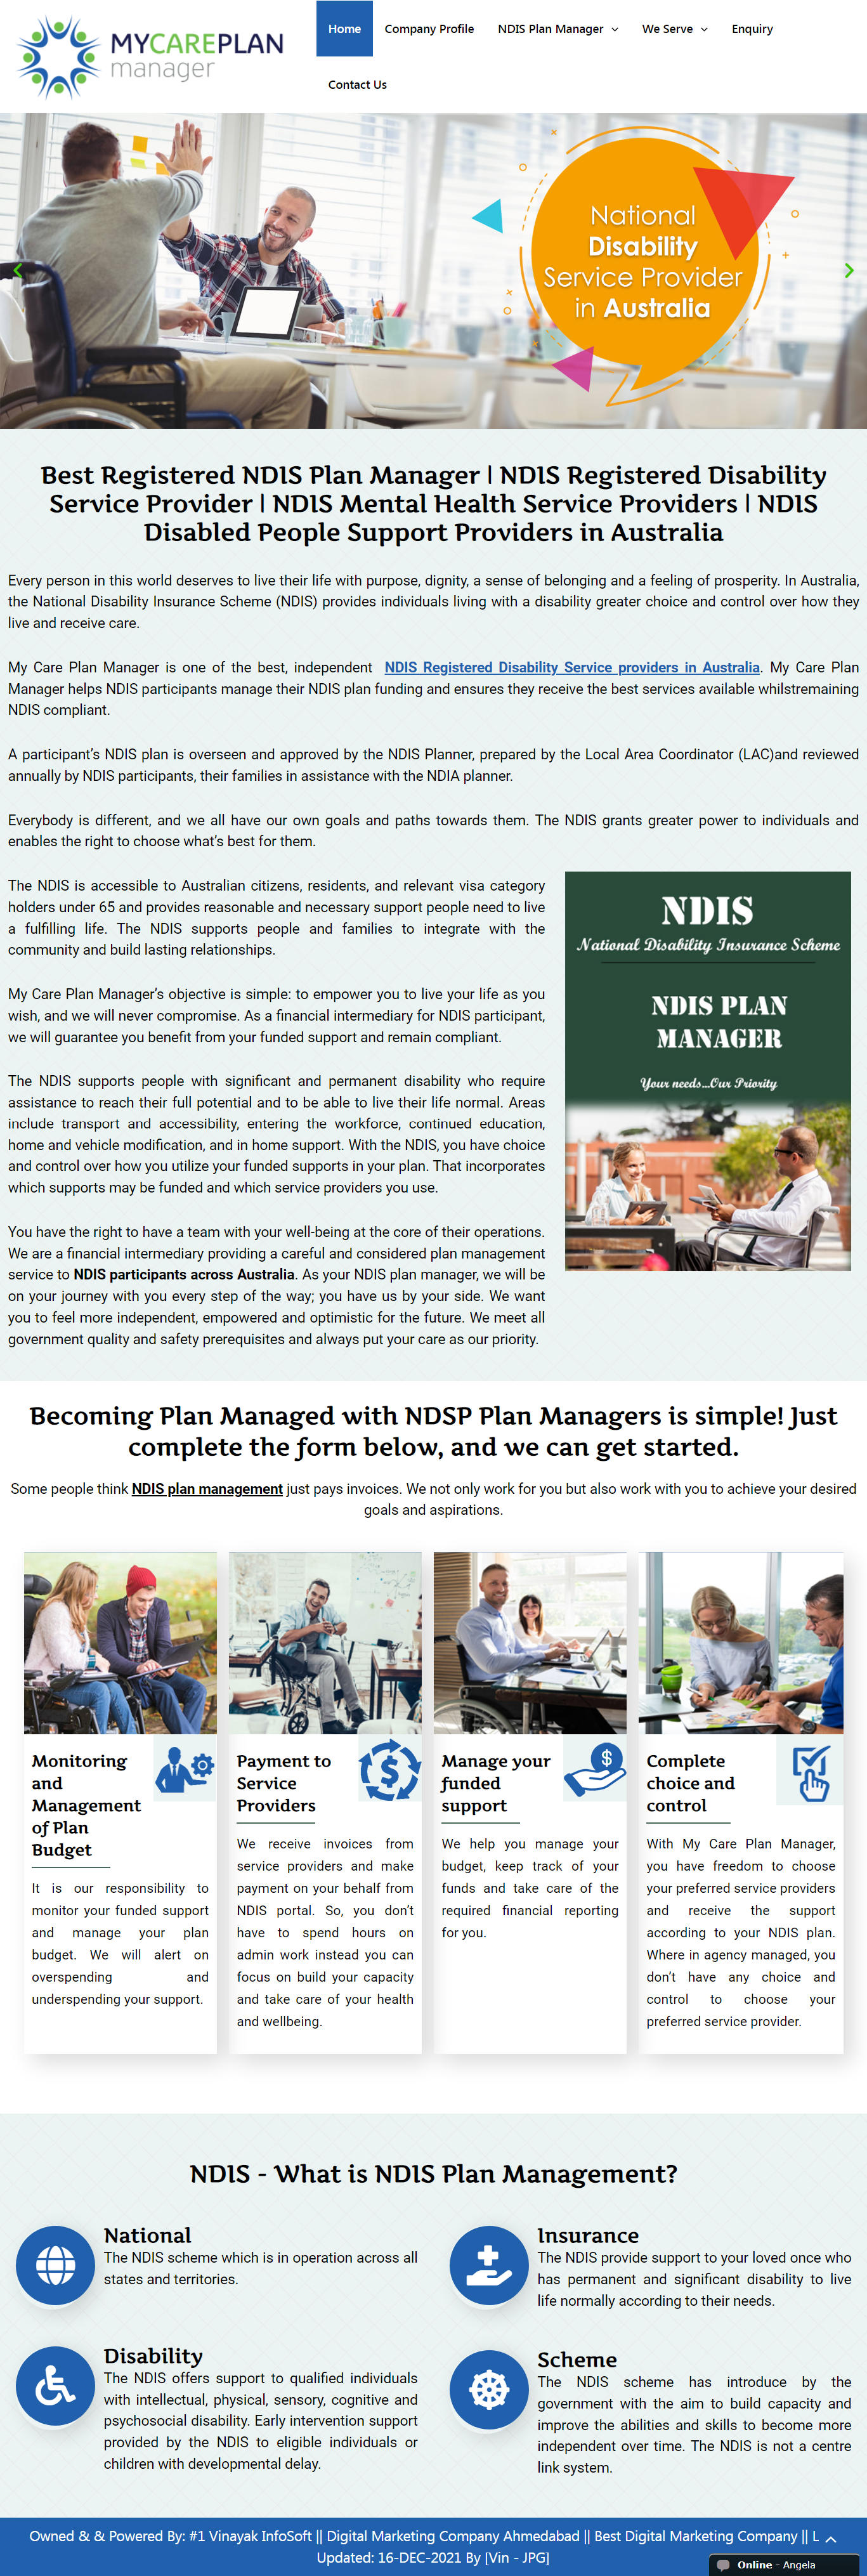 NDIS plan manager